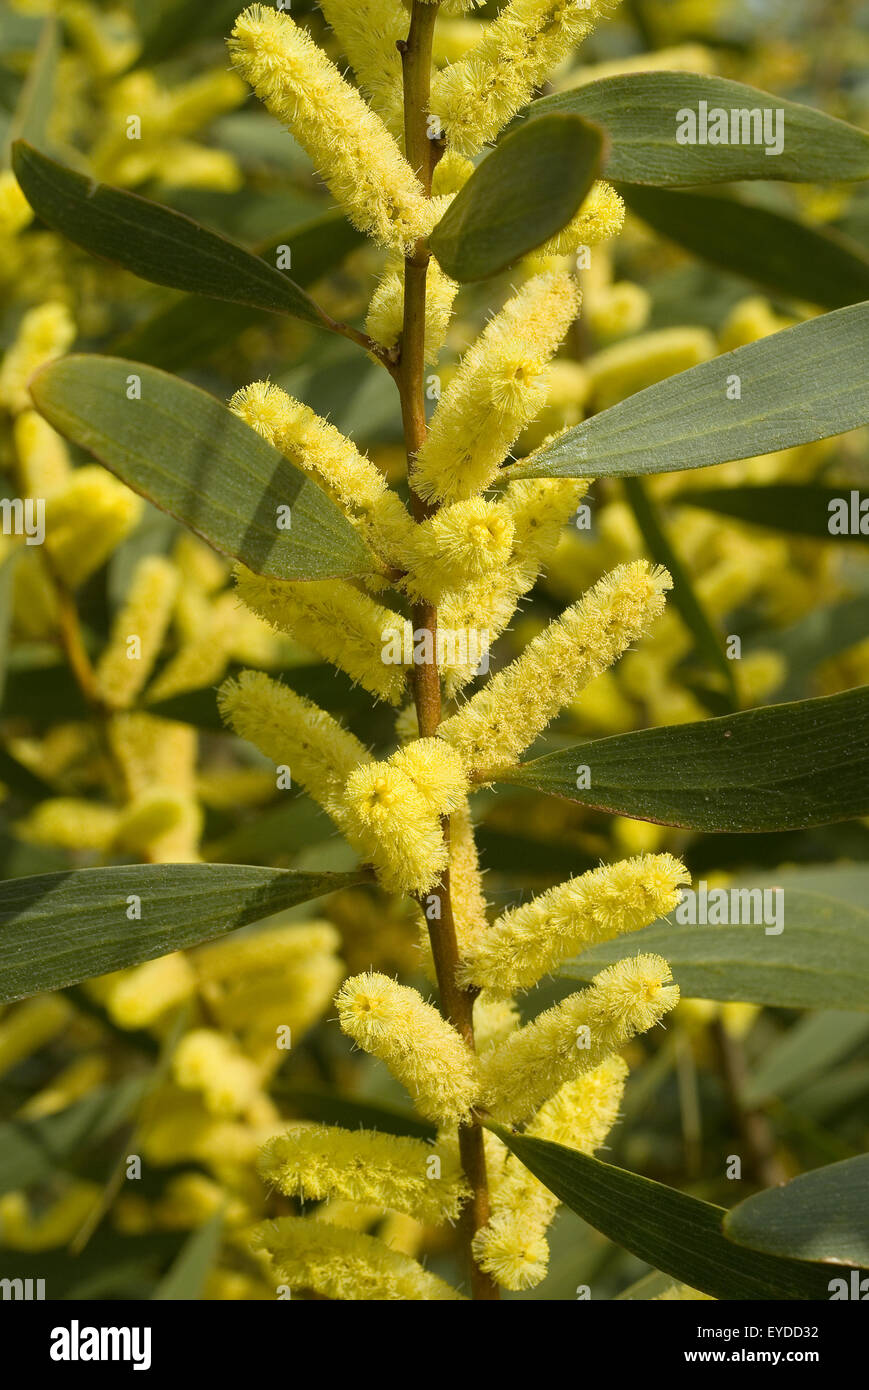 Long-leaved wattle, Coast Wattle or Sydney Golden Wattle (Acacia longifolia) Stock Photo